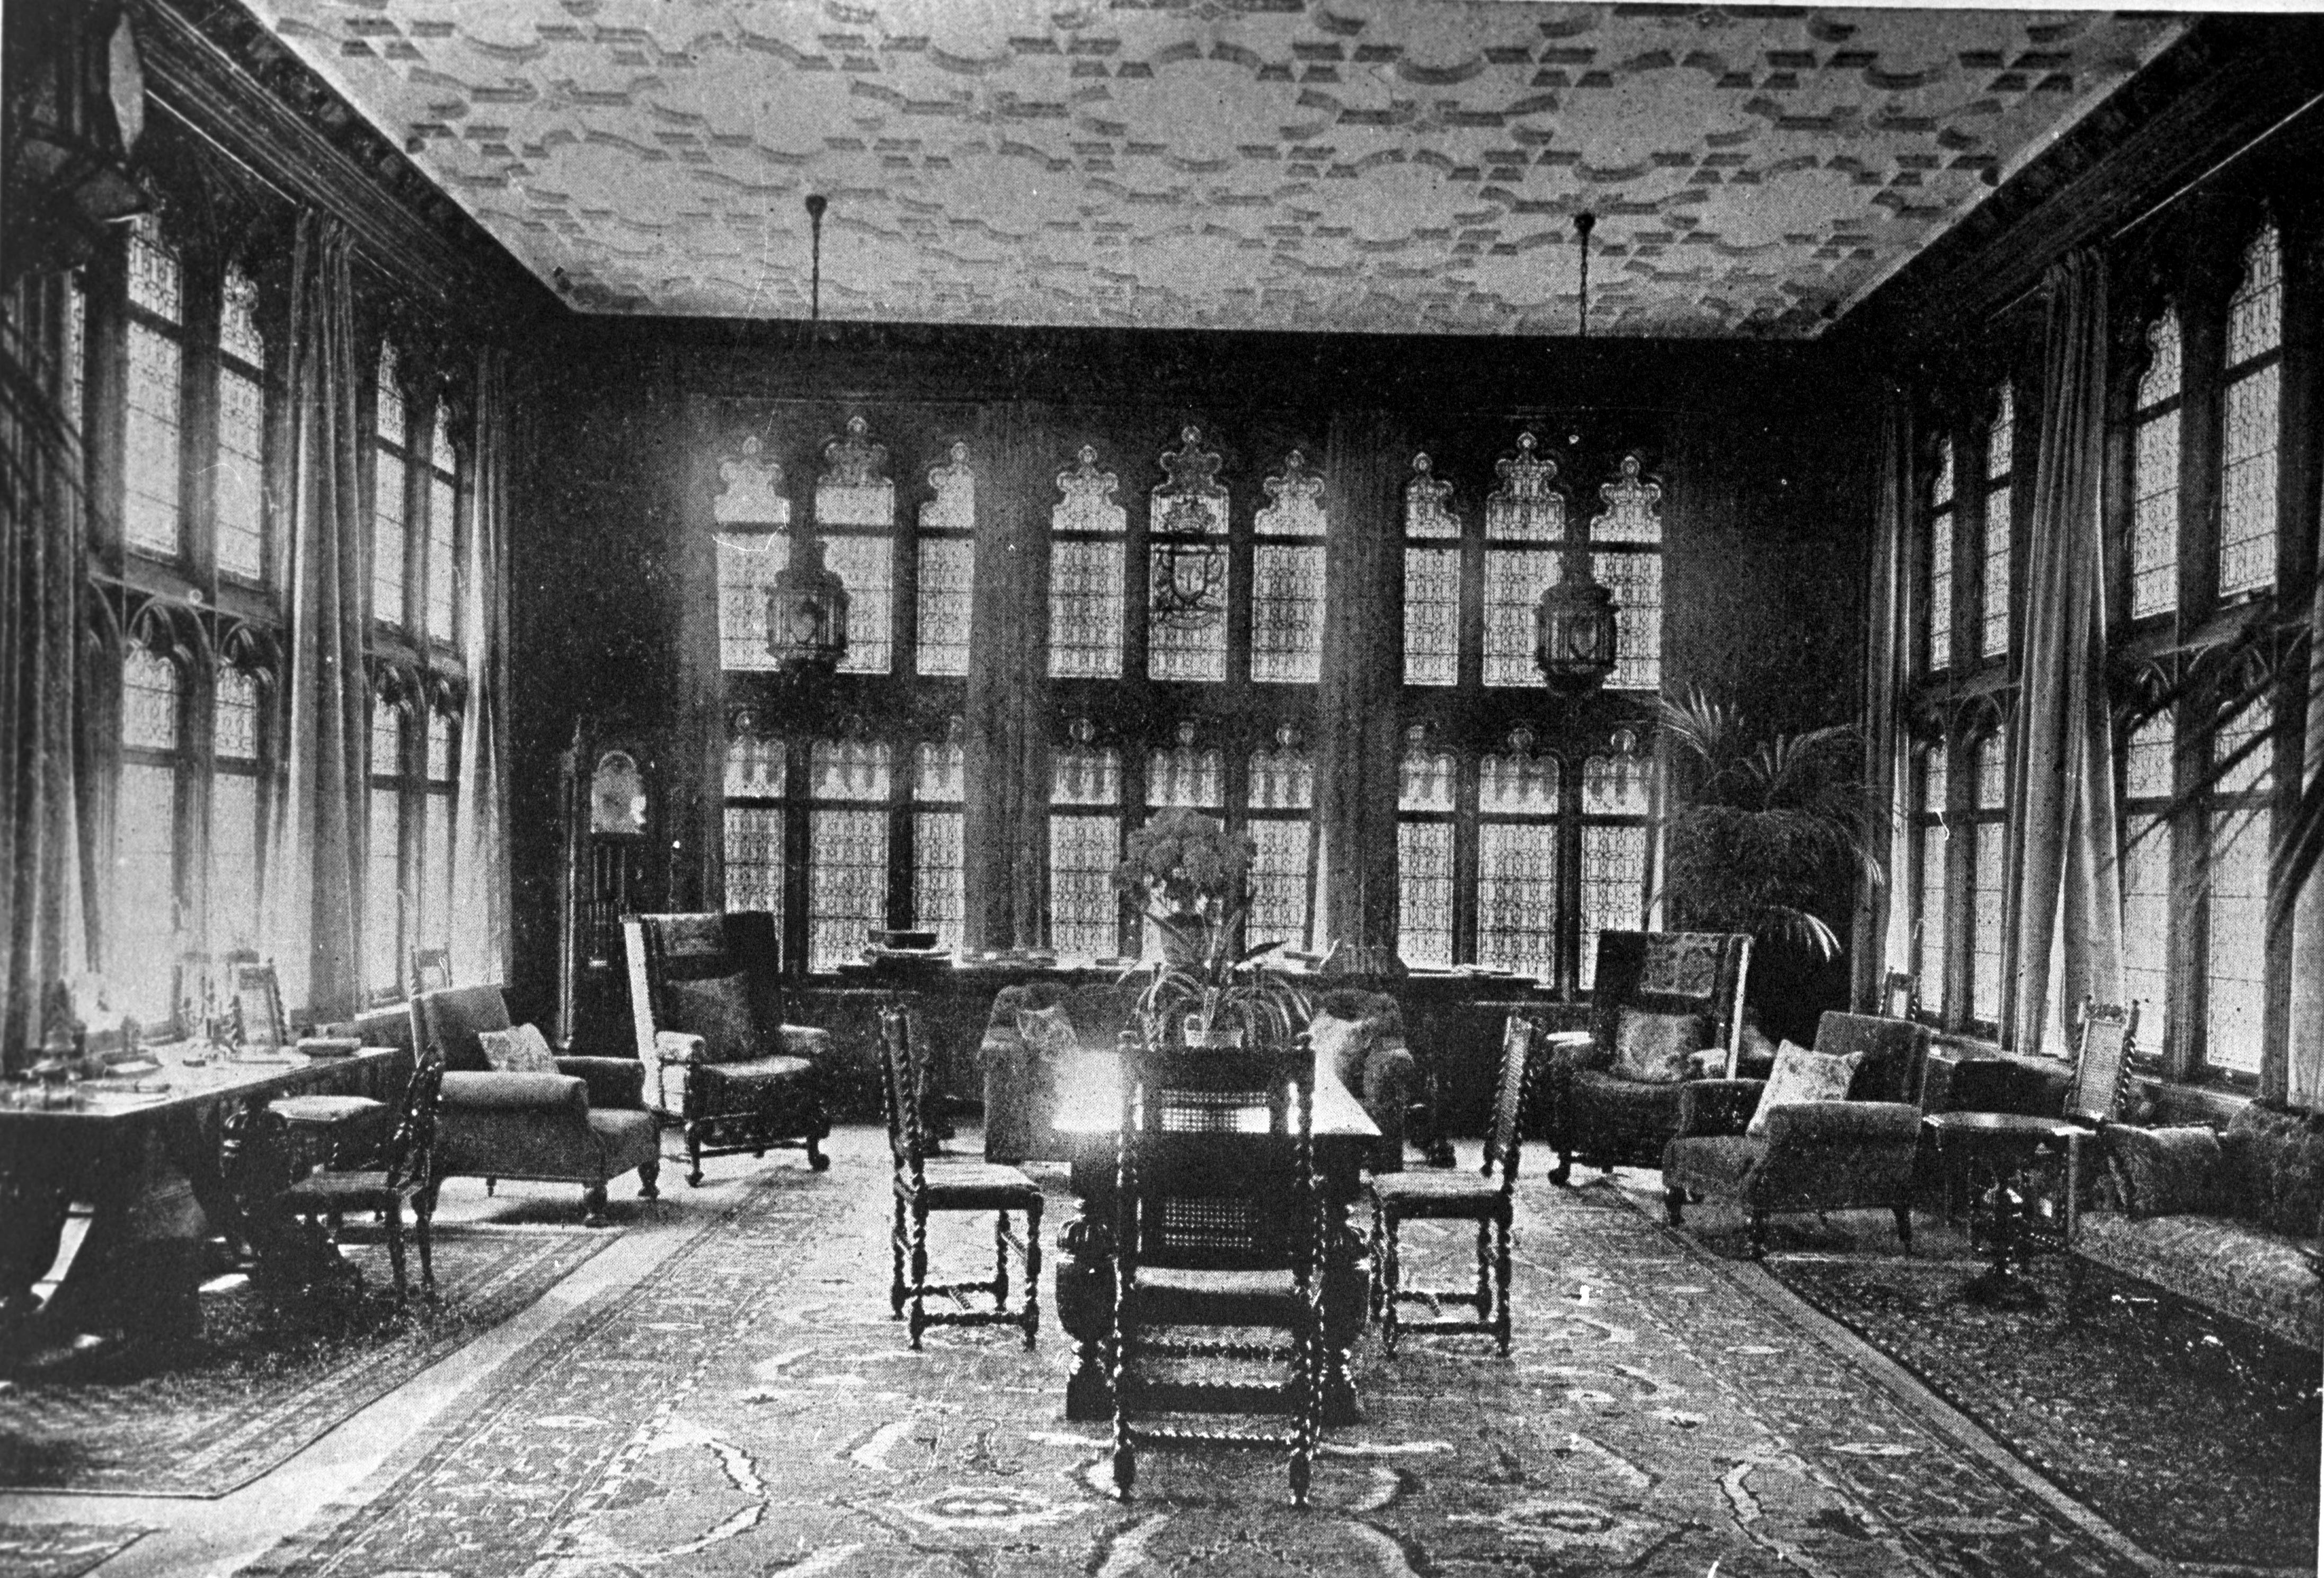 Hempstead House - Interior - Breakfast Room